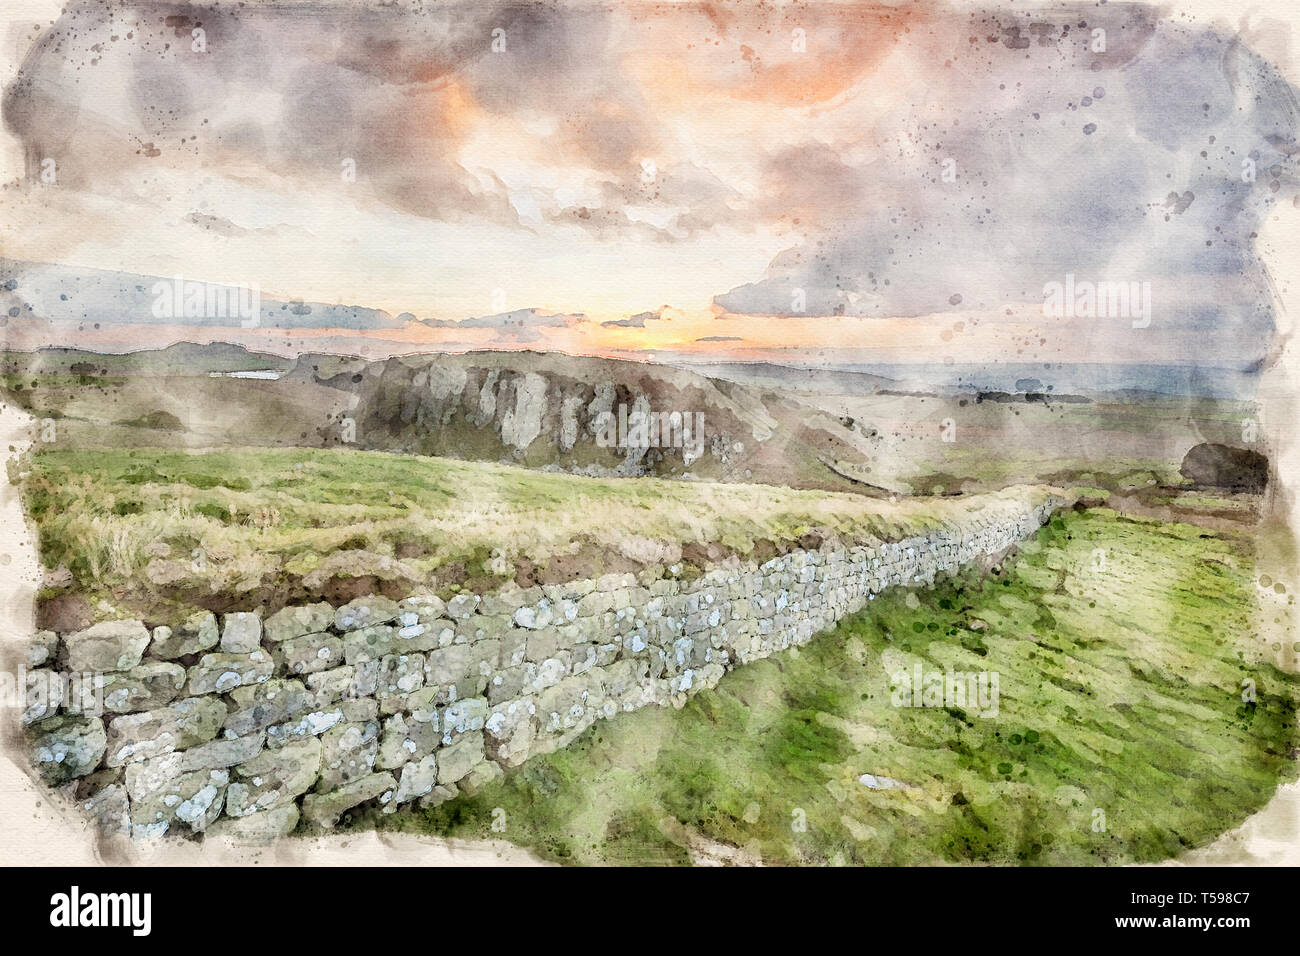 Effetto acquerello da una fotografia del Muro di Adriano guardando ad ovest verso l'acciaio Rigg, Cumbria, England, Regno Unito Foto Stock